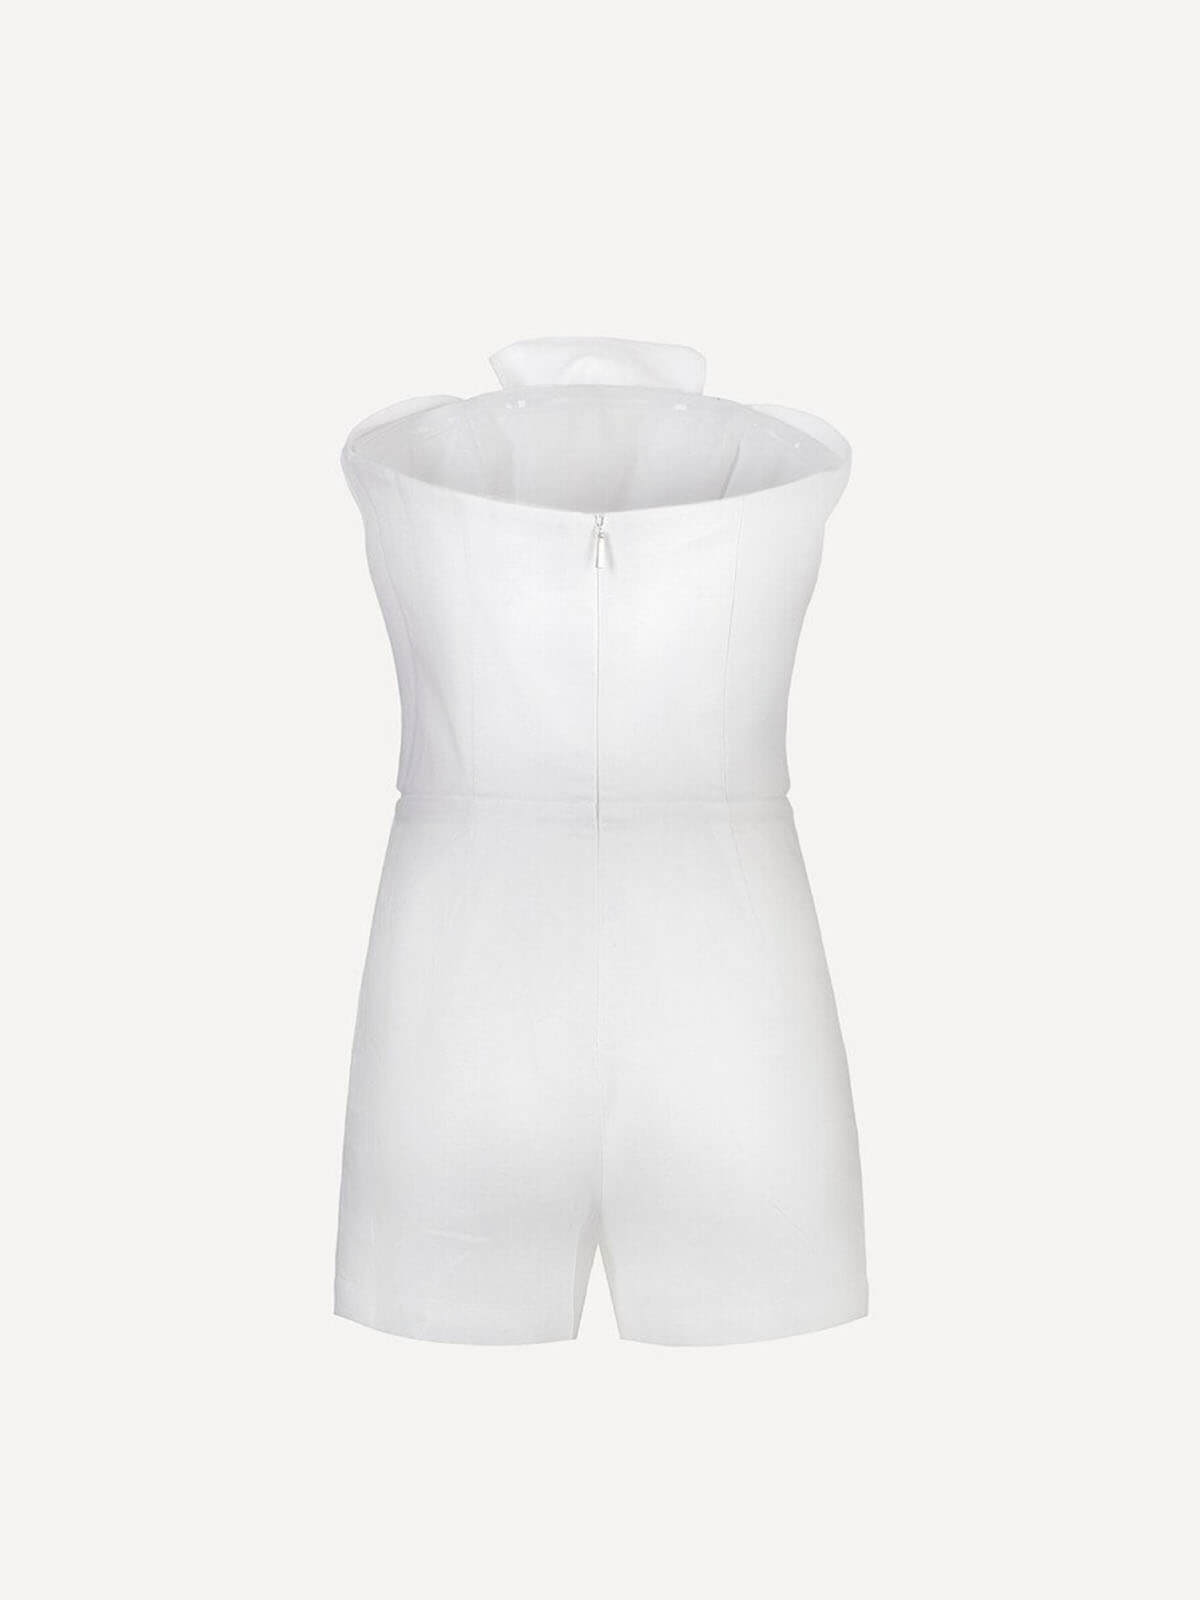 Tuta fiona 100% Capri white linen jumpsuit back